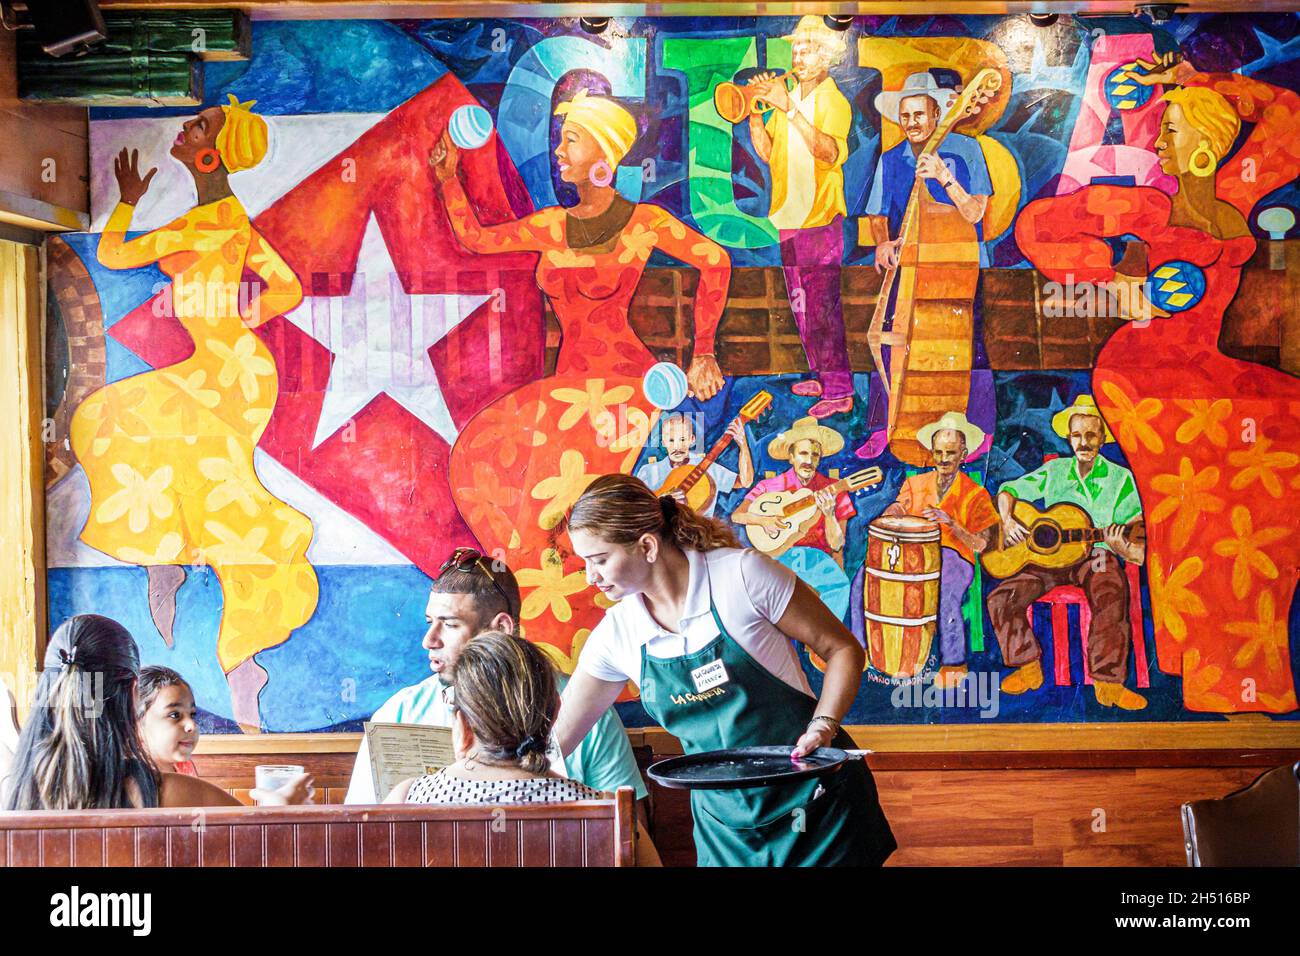 Miami Florida, Little Havana, Calle Ocho, la Carreta restaurant cuisine cubaine, intérieur, art mural, serveur hispanique servant table stand famille Banque D'Images